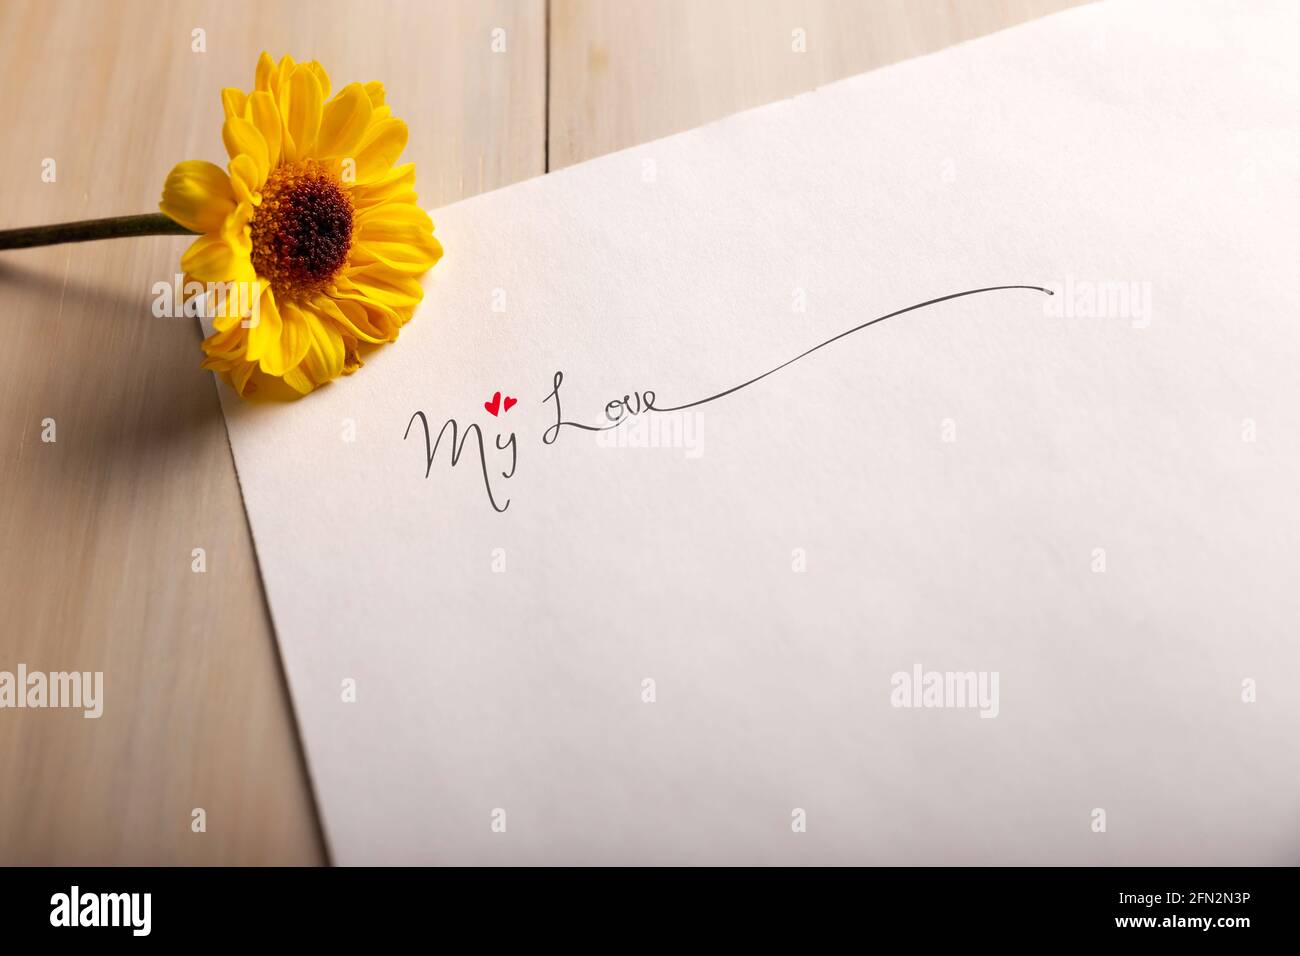 Lettre d'amour. Feuille de papier blanche avec l'expression « mon amour » et une fleur jaune Banque D'Images